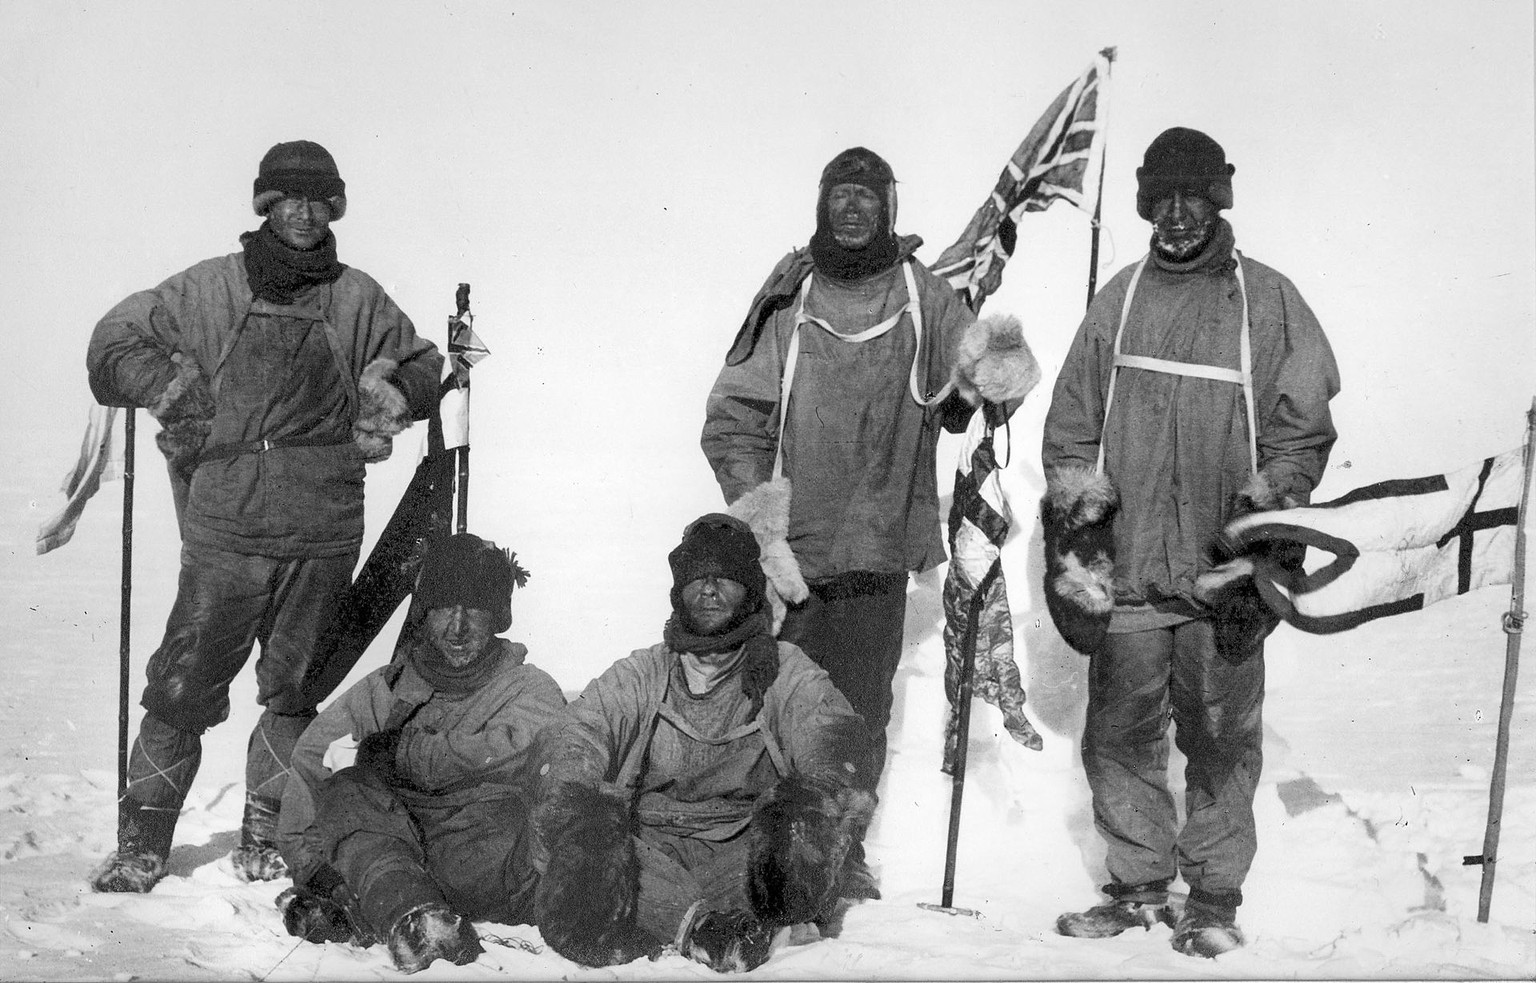 Scotts Team am Südpol am 18. Januar 1912. Von links nach rechts: (stehend) Oates, Scott, Wilson, (sitzend) Bowers und Evans. Sie fanden einen Bericht über die Anwesenheit der Norweger, die zu fünft hi ...